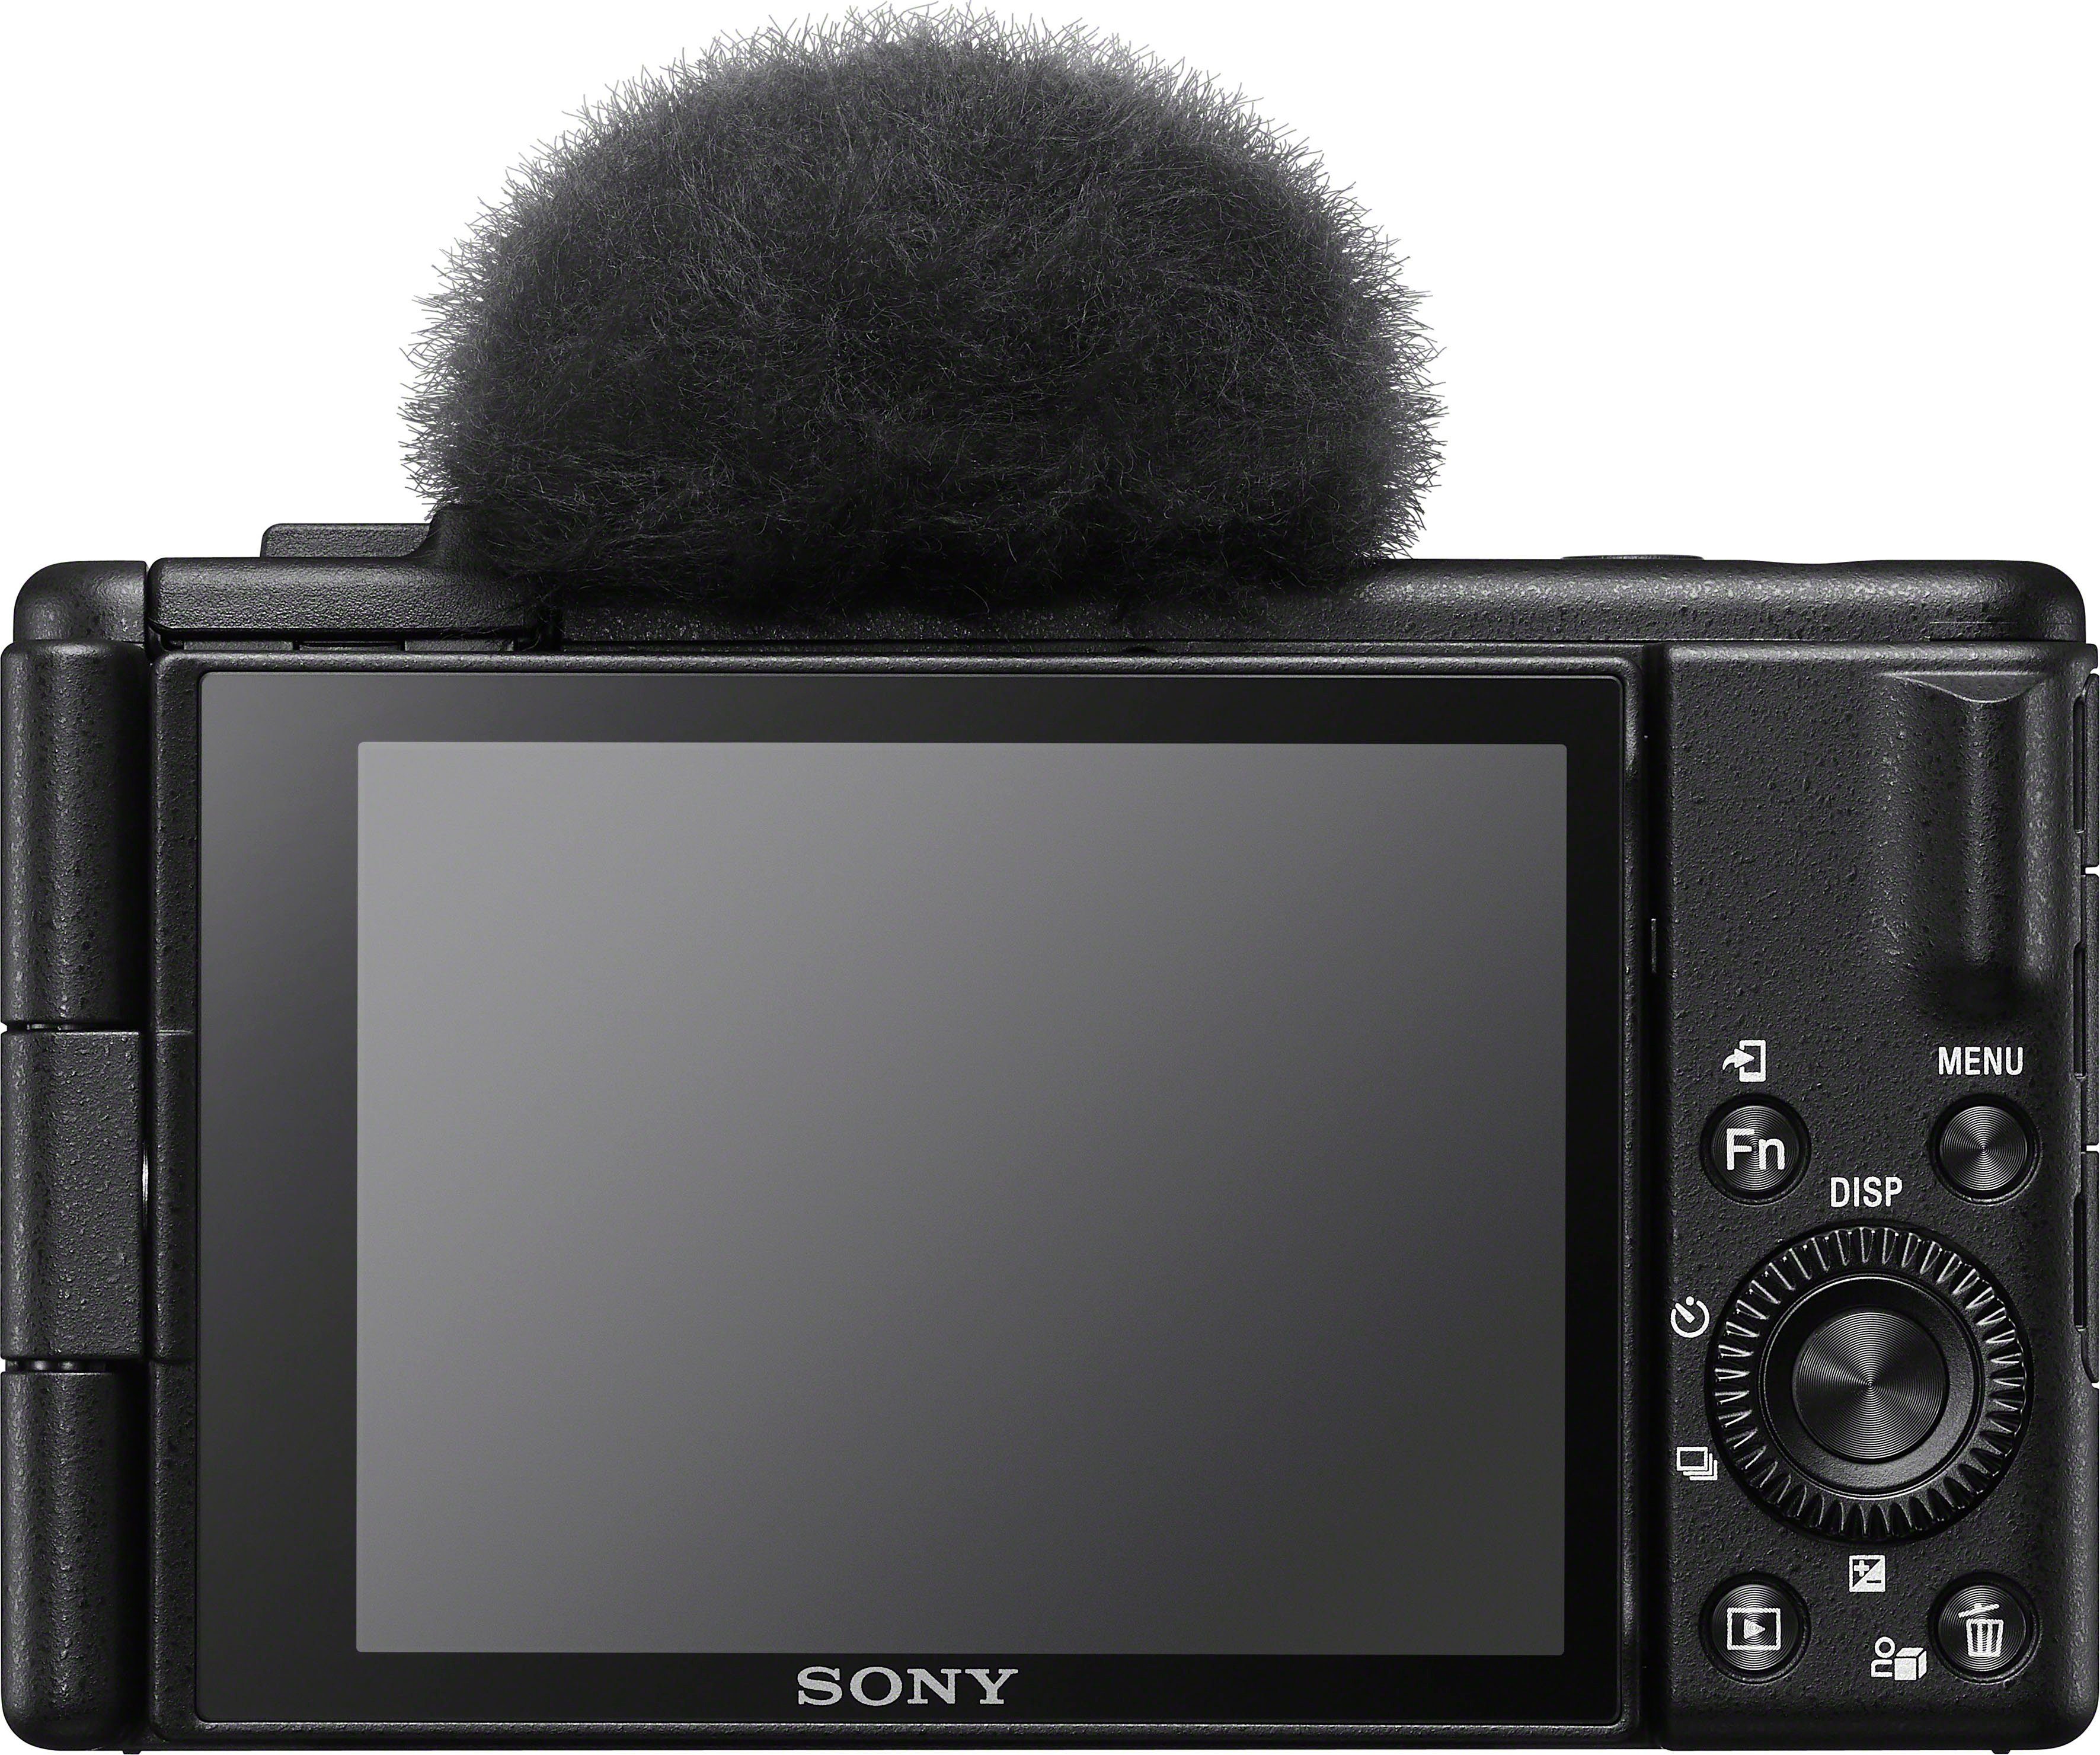 Gruppen, Kompaktkamera Objektiv, ZV-1F Sony WLAN) 6 T* 6 MP, Bluetooth, 20,1 Elemente in Tessar (ZEISS